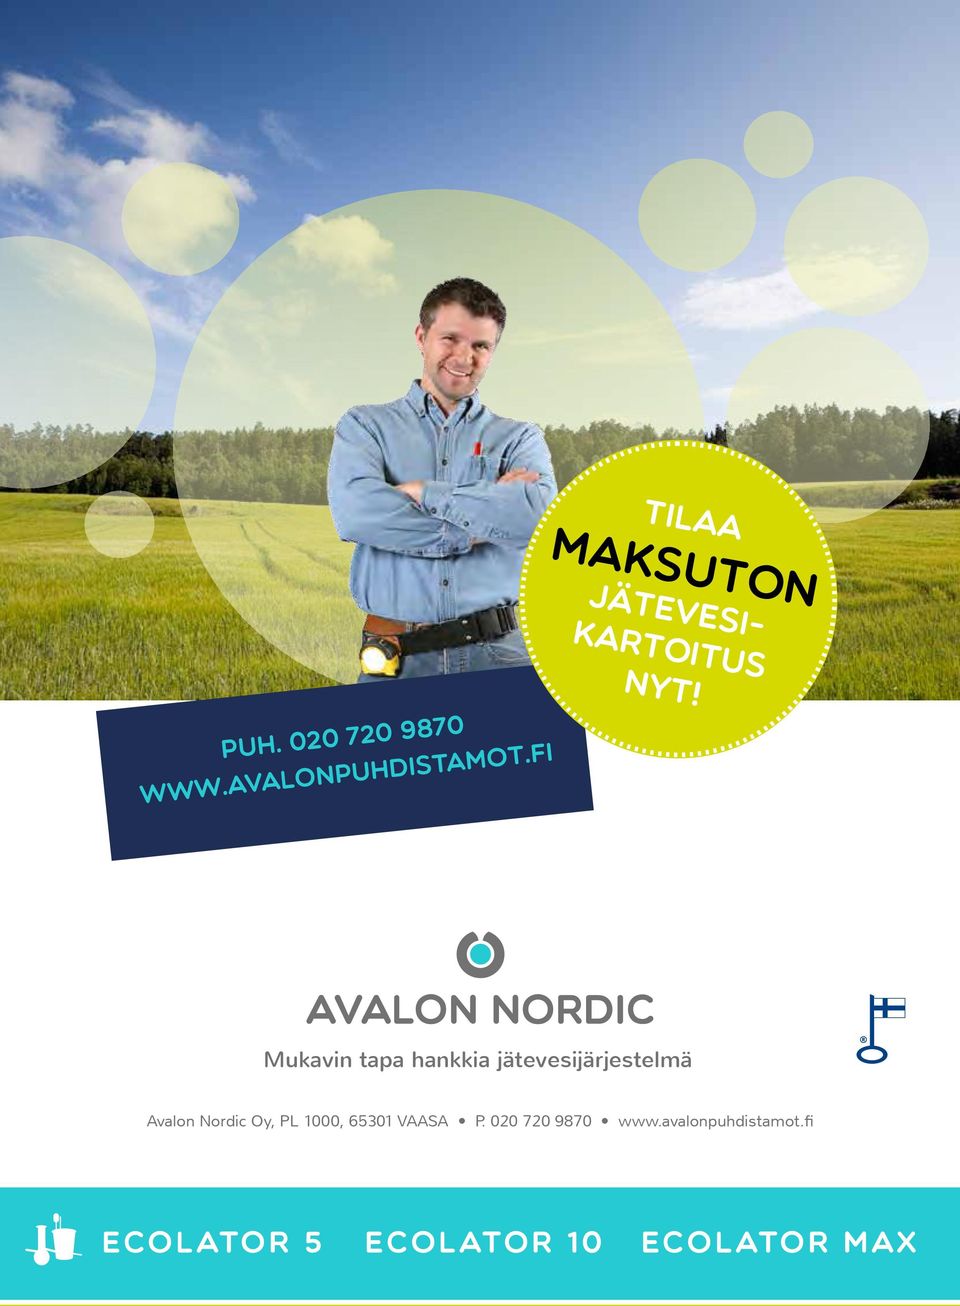 Mukavin tapa hankkia jätevesijärjestelmä Avalon Nordic Oy,